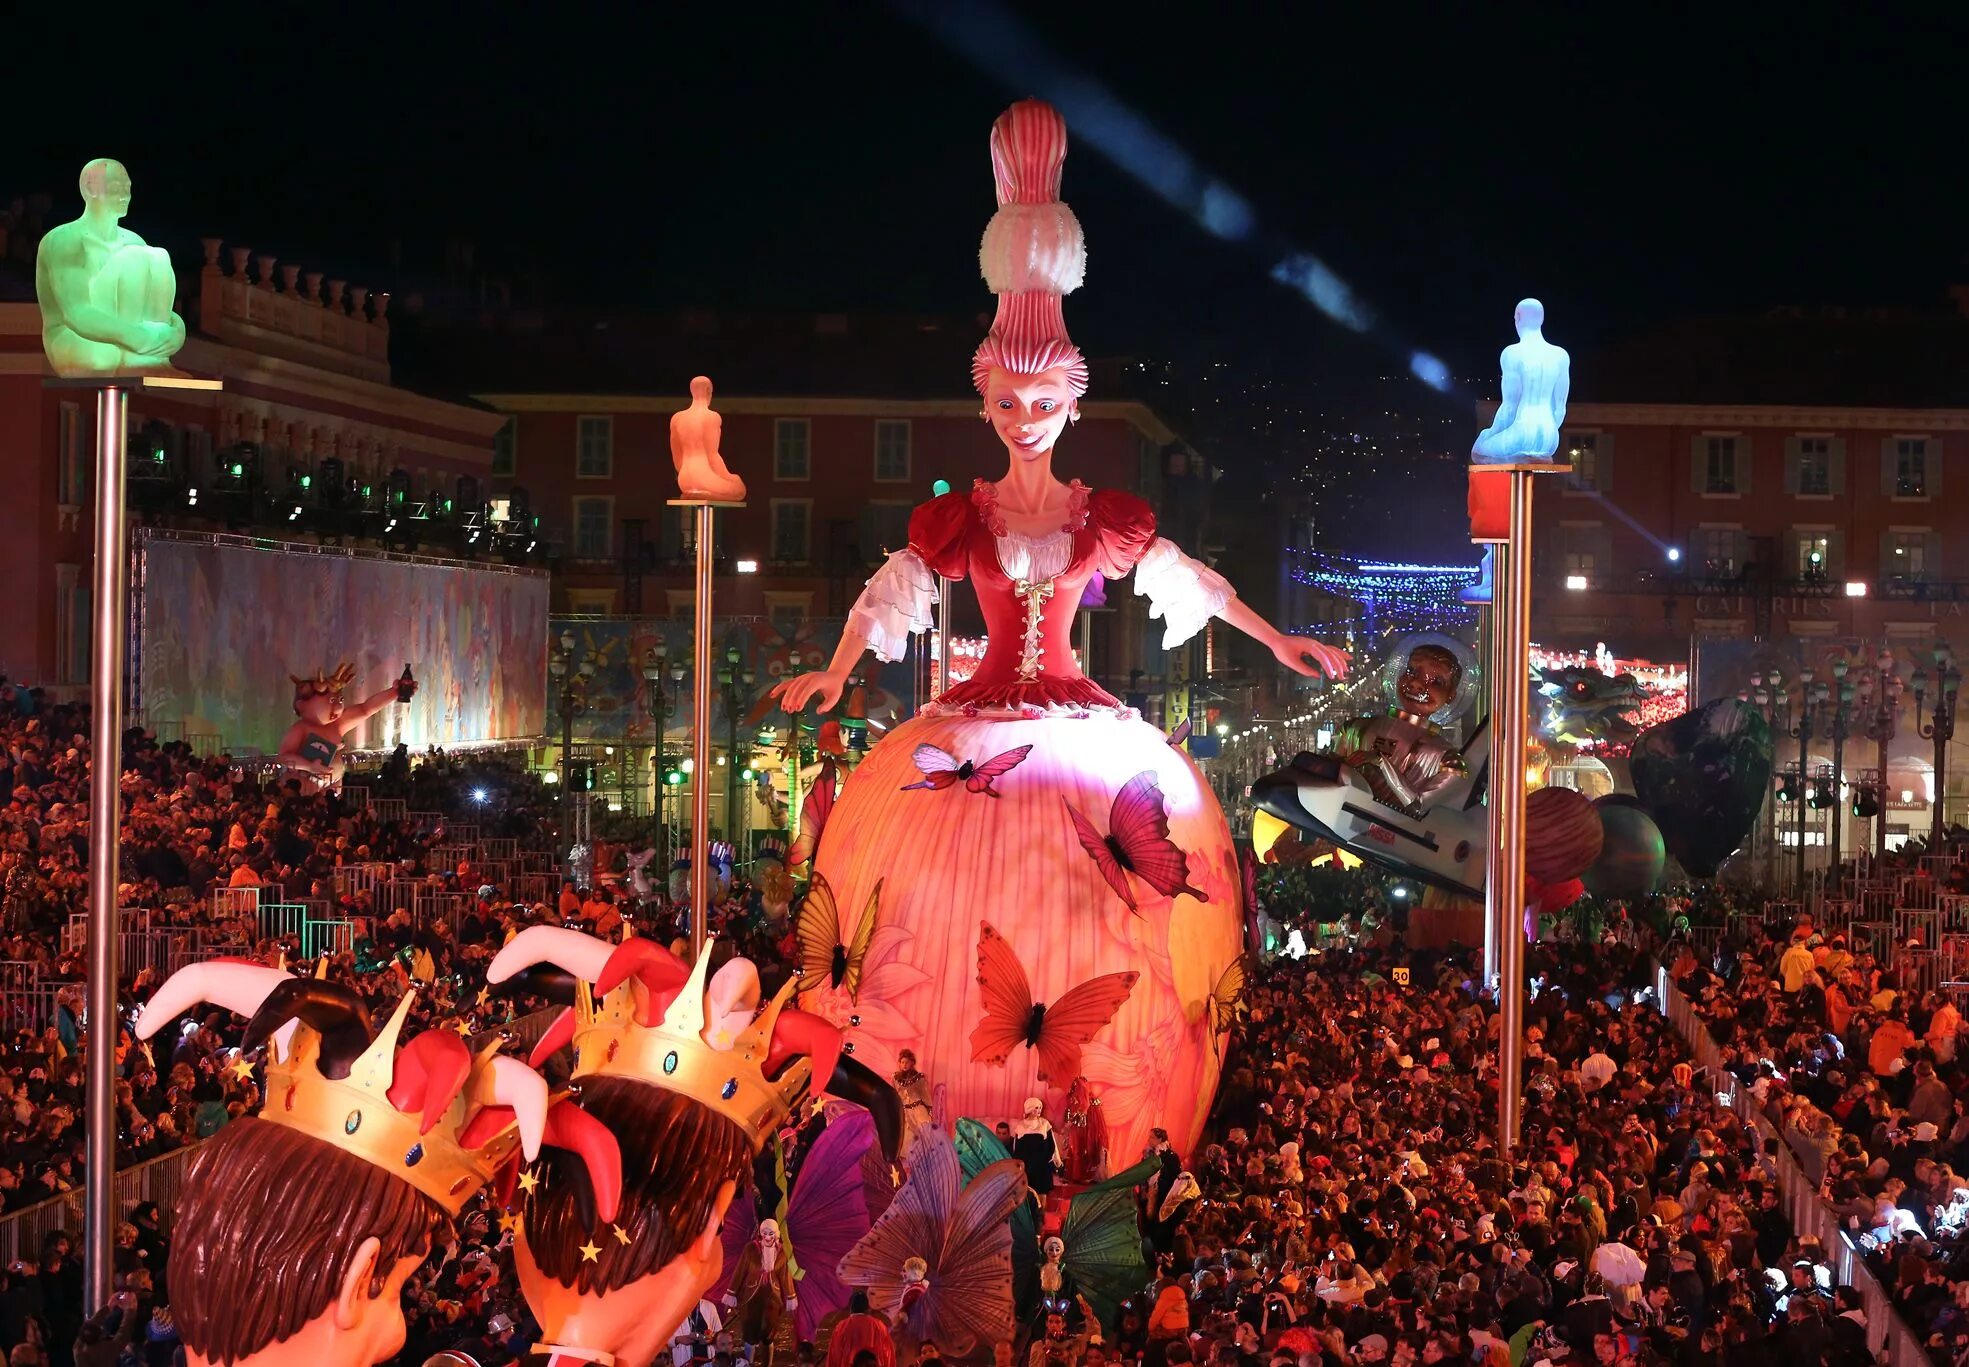 Ночной парад. Карнавал в Ницце – Carnaval de nice Франция. Карнавал в Ницце – Ницца, Франция. Куклы карнавал в Ницце. Карнавал Ницца в феврале.